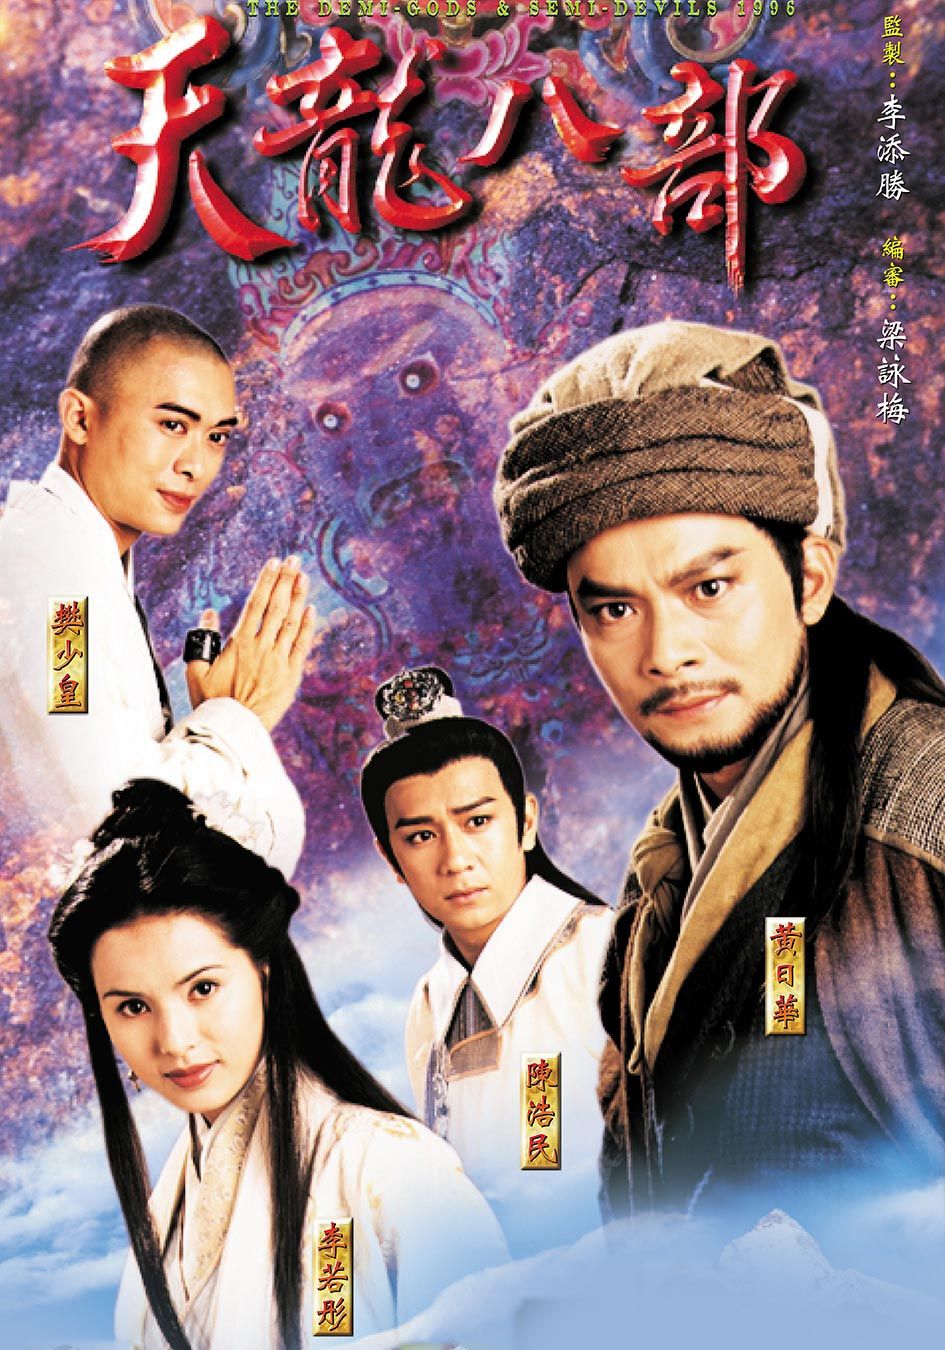 1997年TVB版本的劇集《天龍八部》是不少劇迷心目中的經典劇集之一。